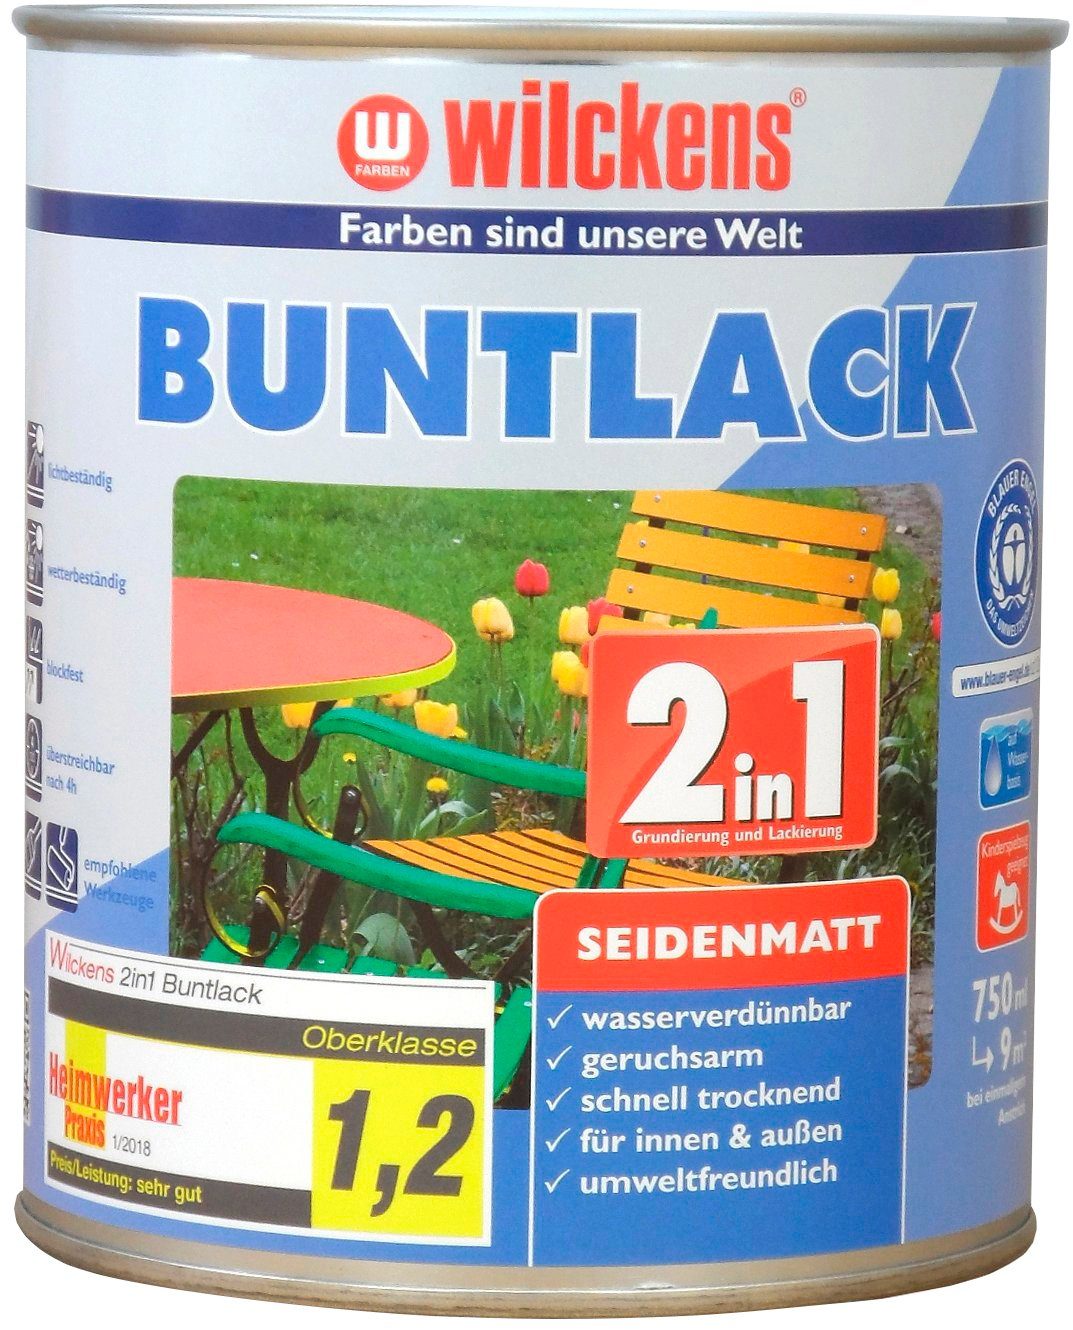 Wilckens Farben Holzlack 2in1 Buntlack seidenmatt, umweltfreundlich RAL 5010 Enzianblau seidenmatt